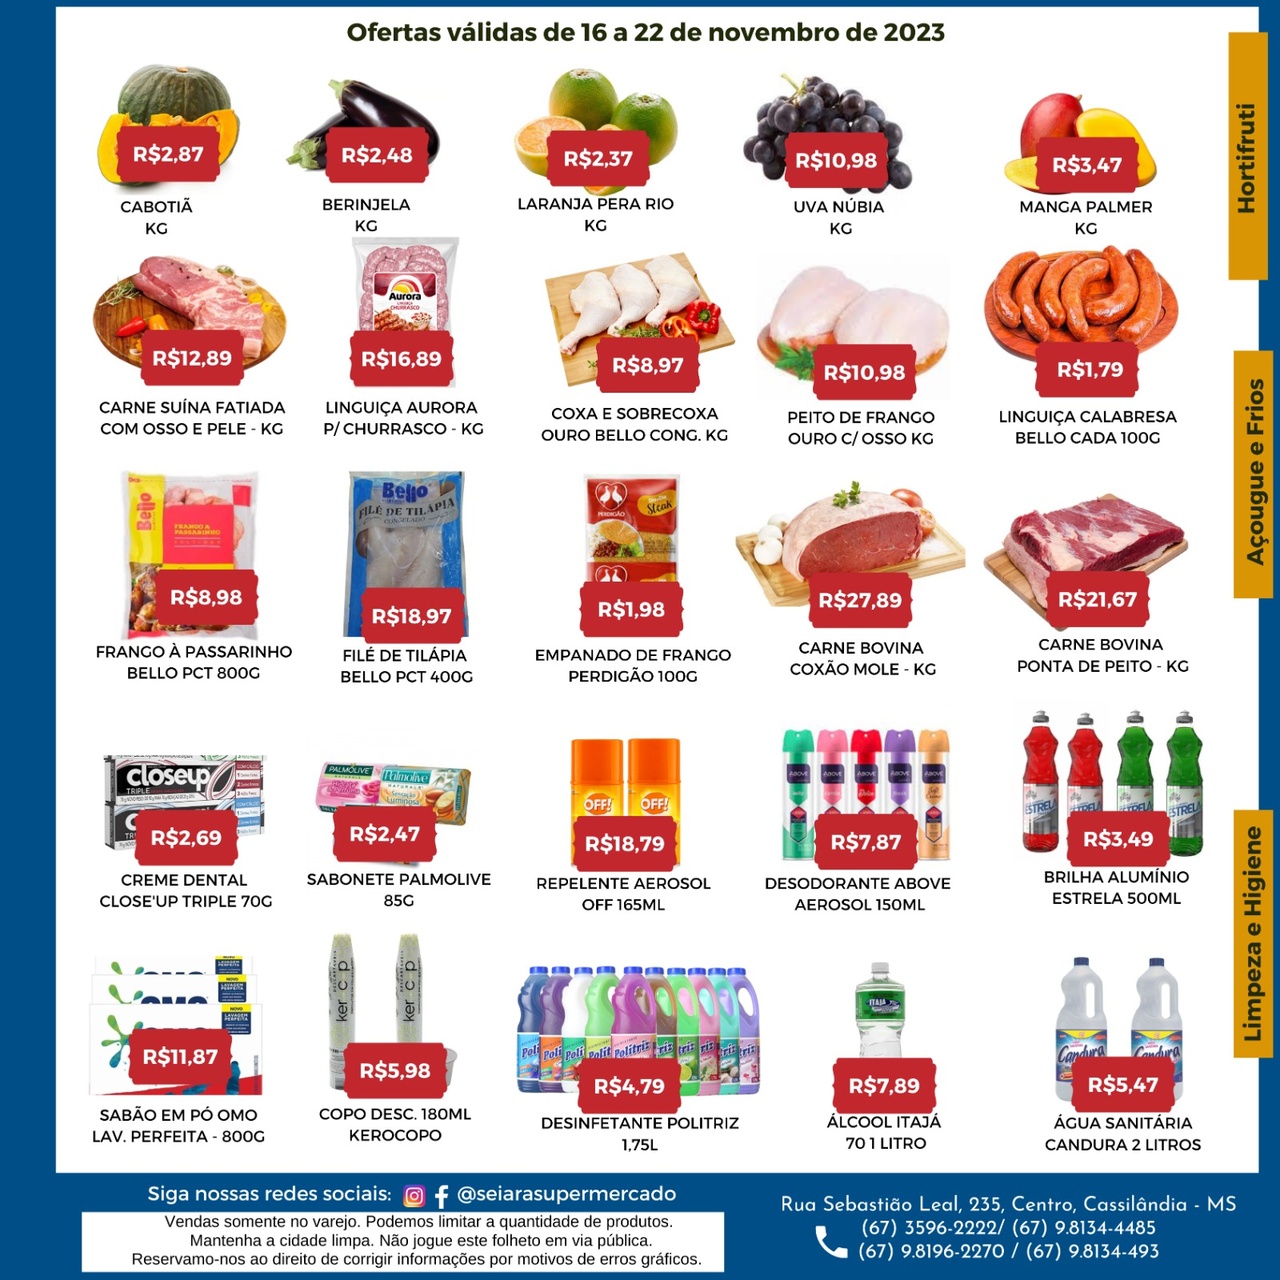 Seiara Supermercado Econ&ocirc;mico: confira as ofertas da semana (16/11 &agrave; 22/11)